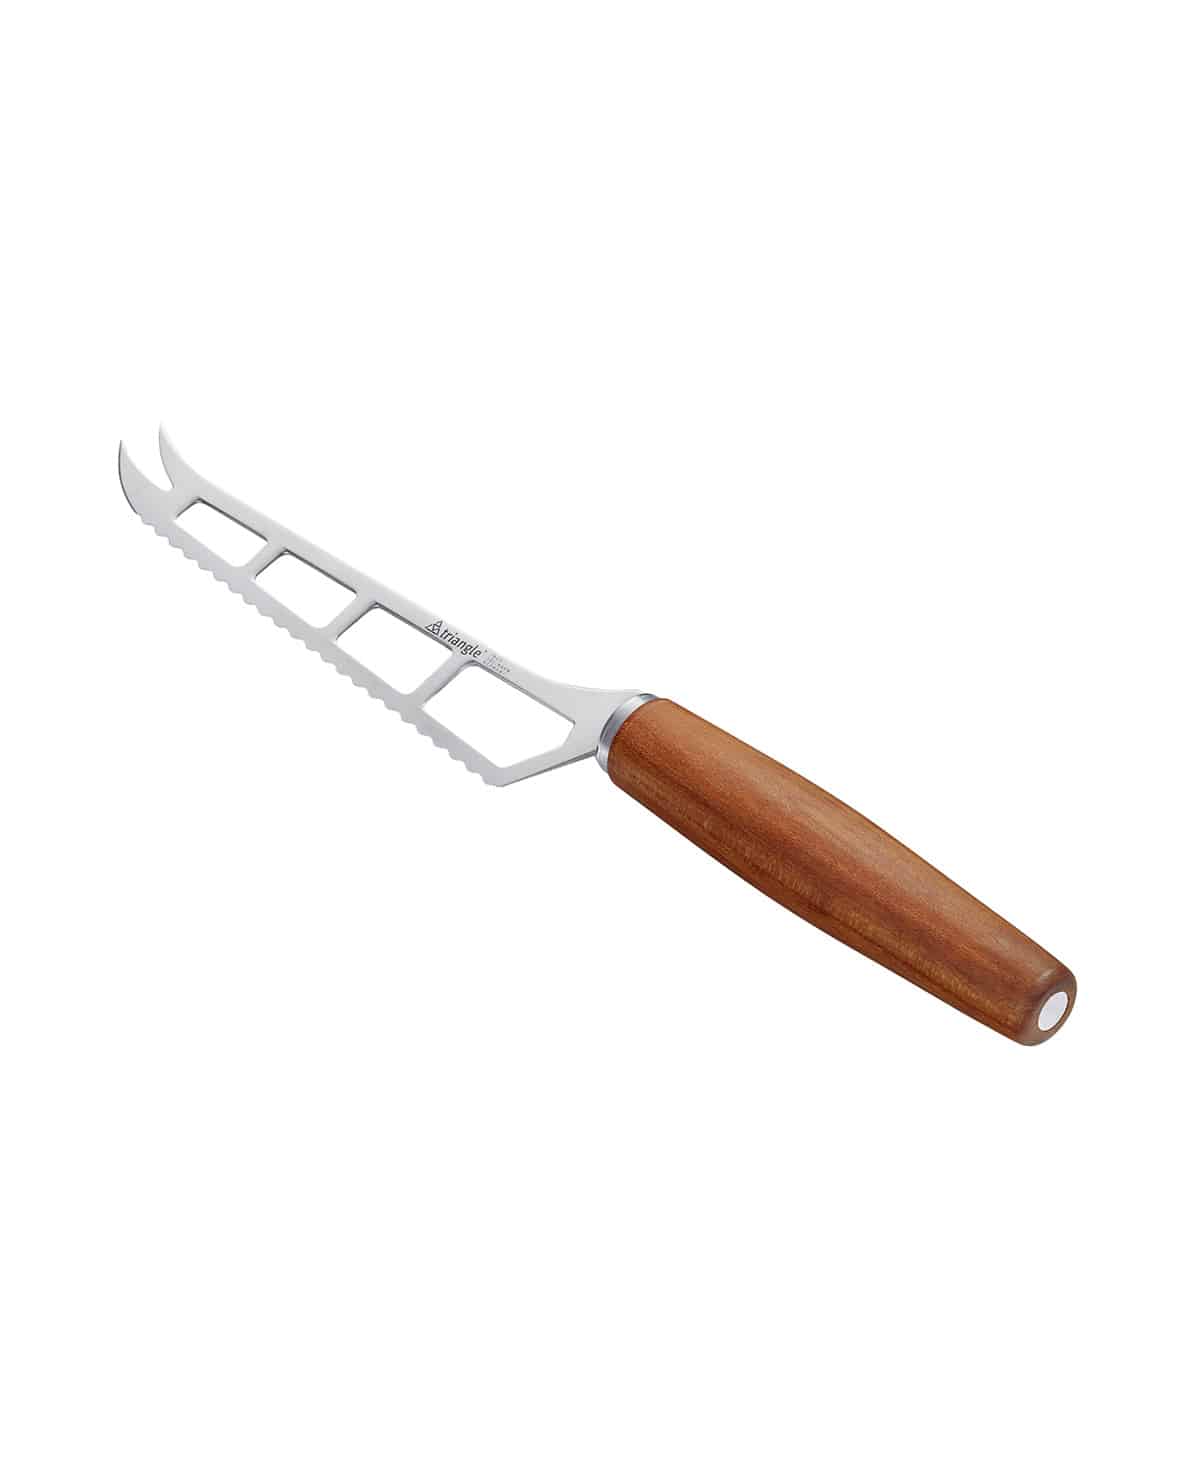 Cheese knife scythe, plum wood handle